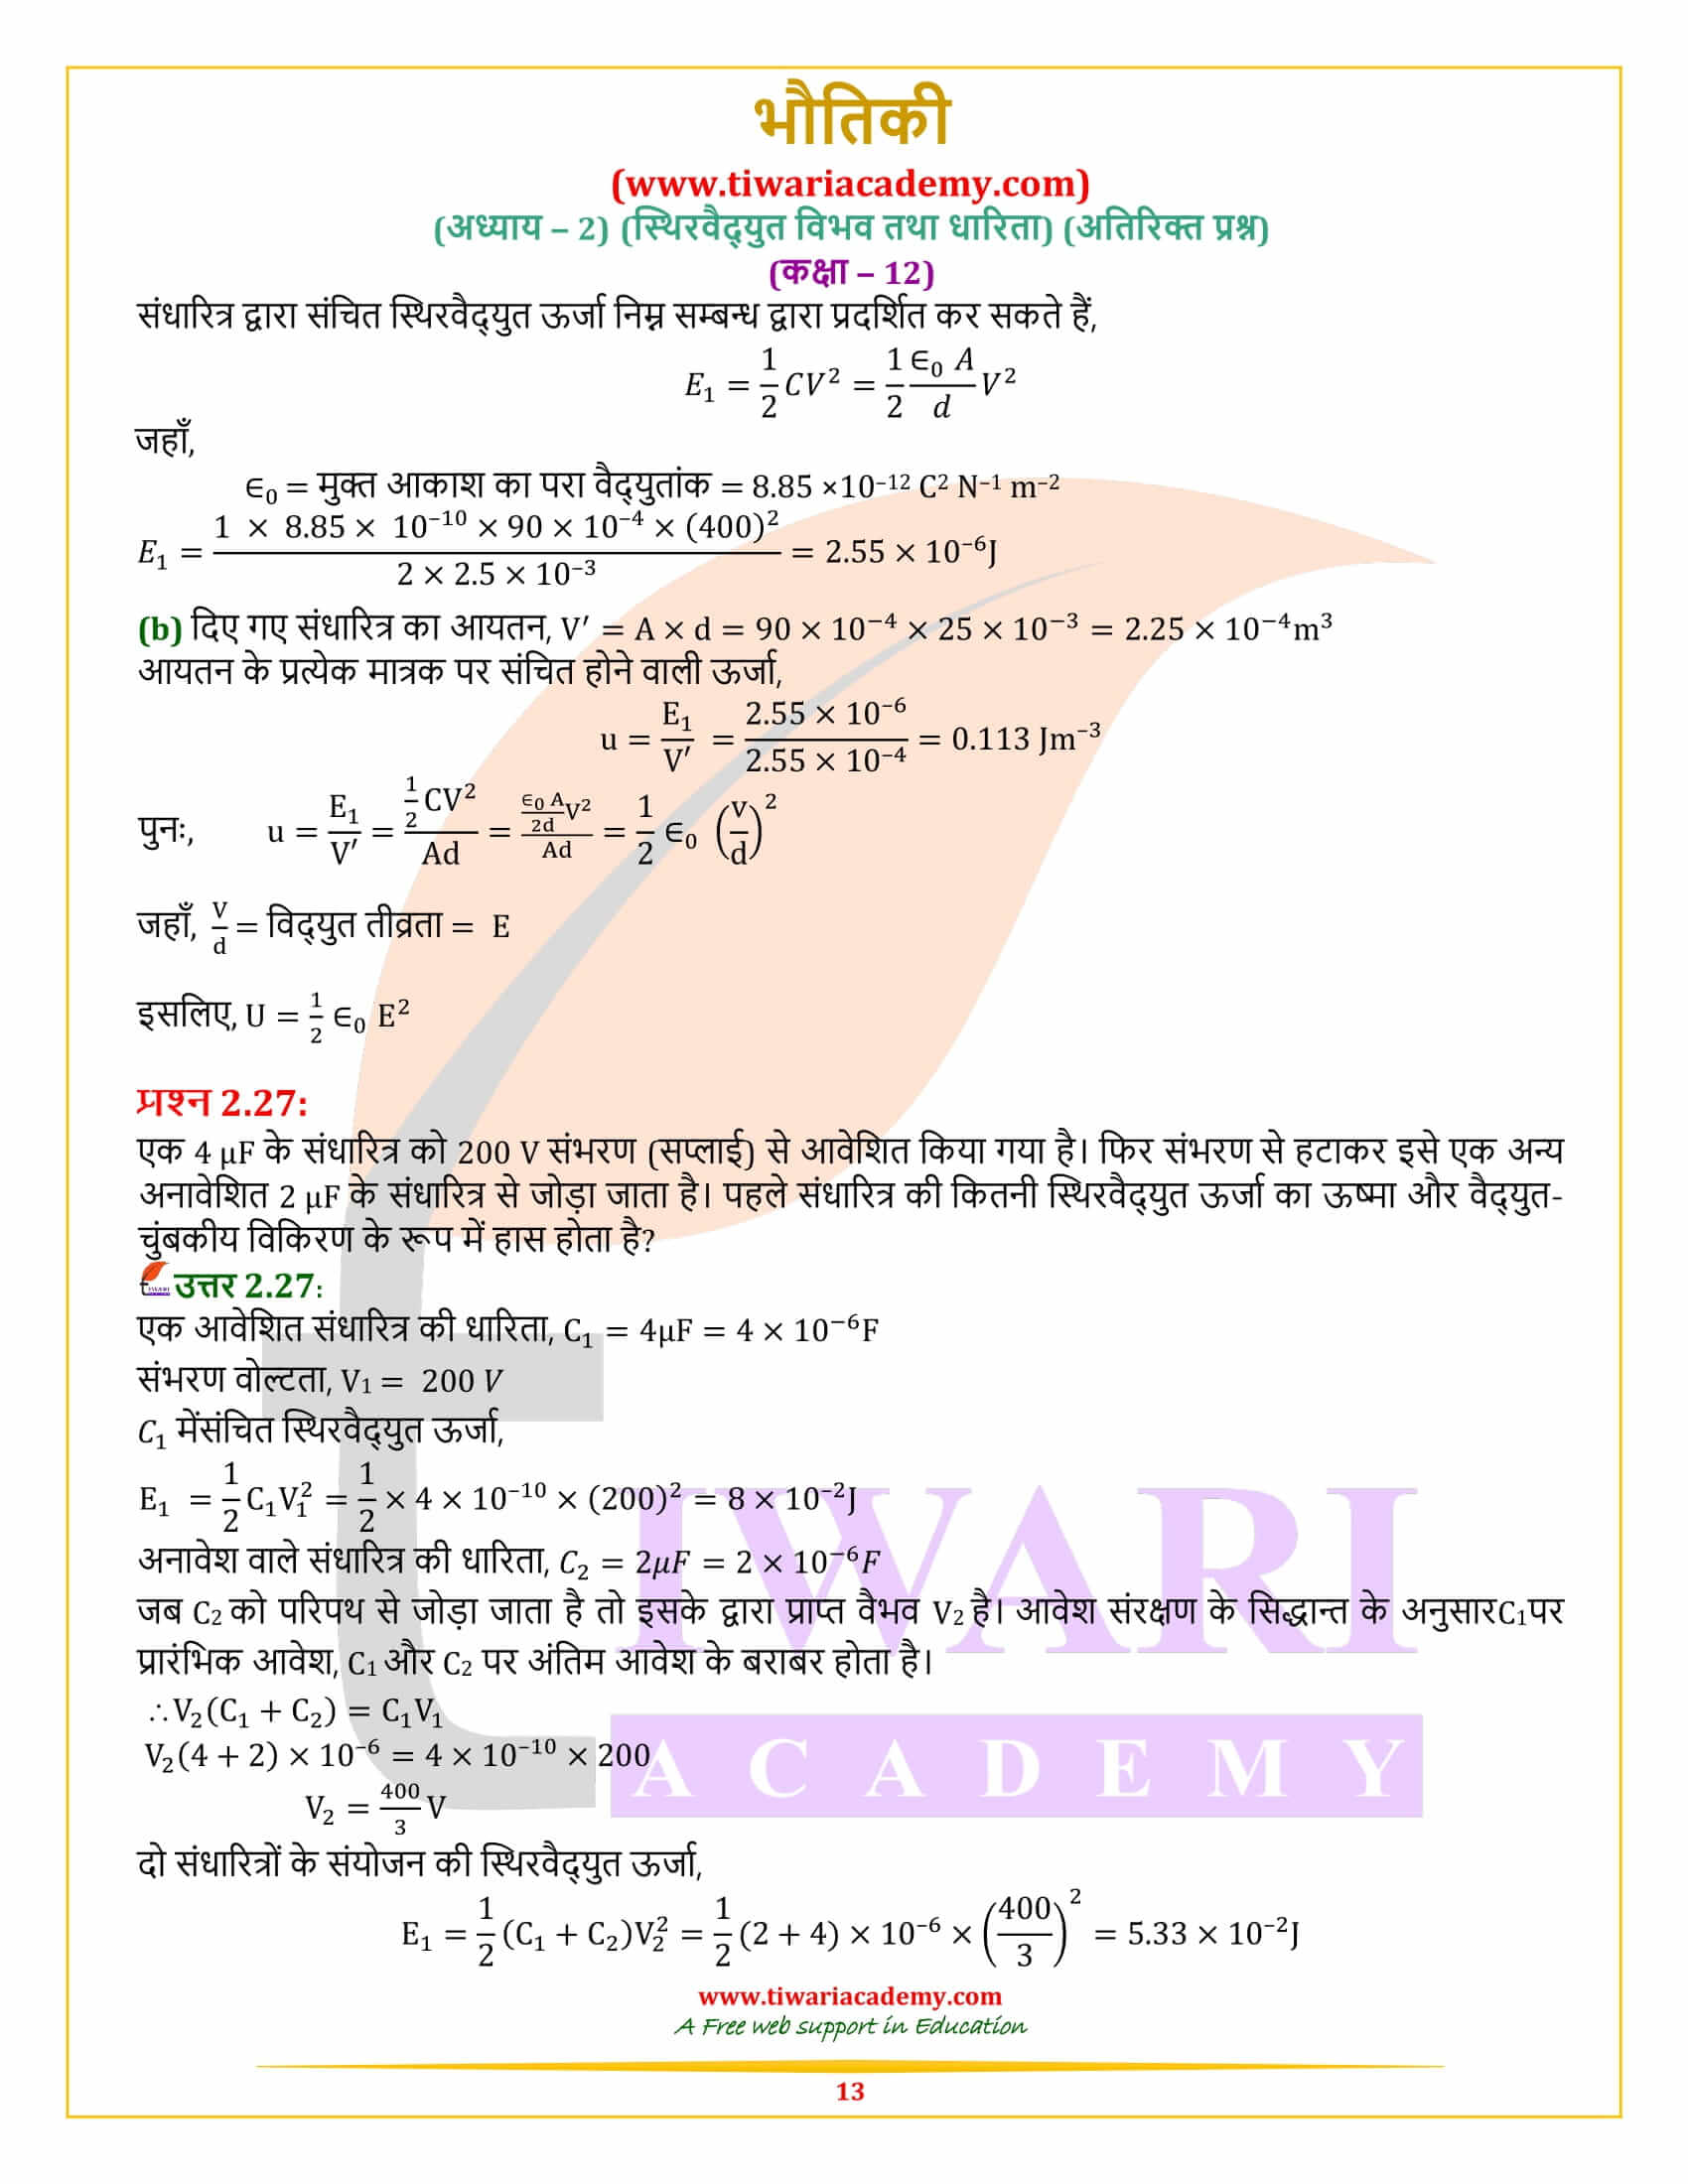 कक्षा 12 भौतिकी अध्याय 2 अतिरिक्त प्रश्न के उत्तर हिंदी मीडियम